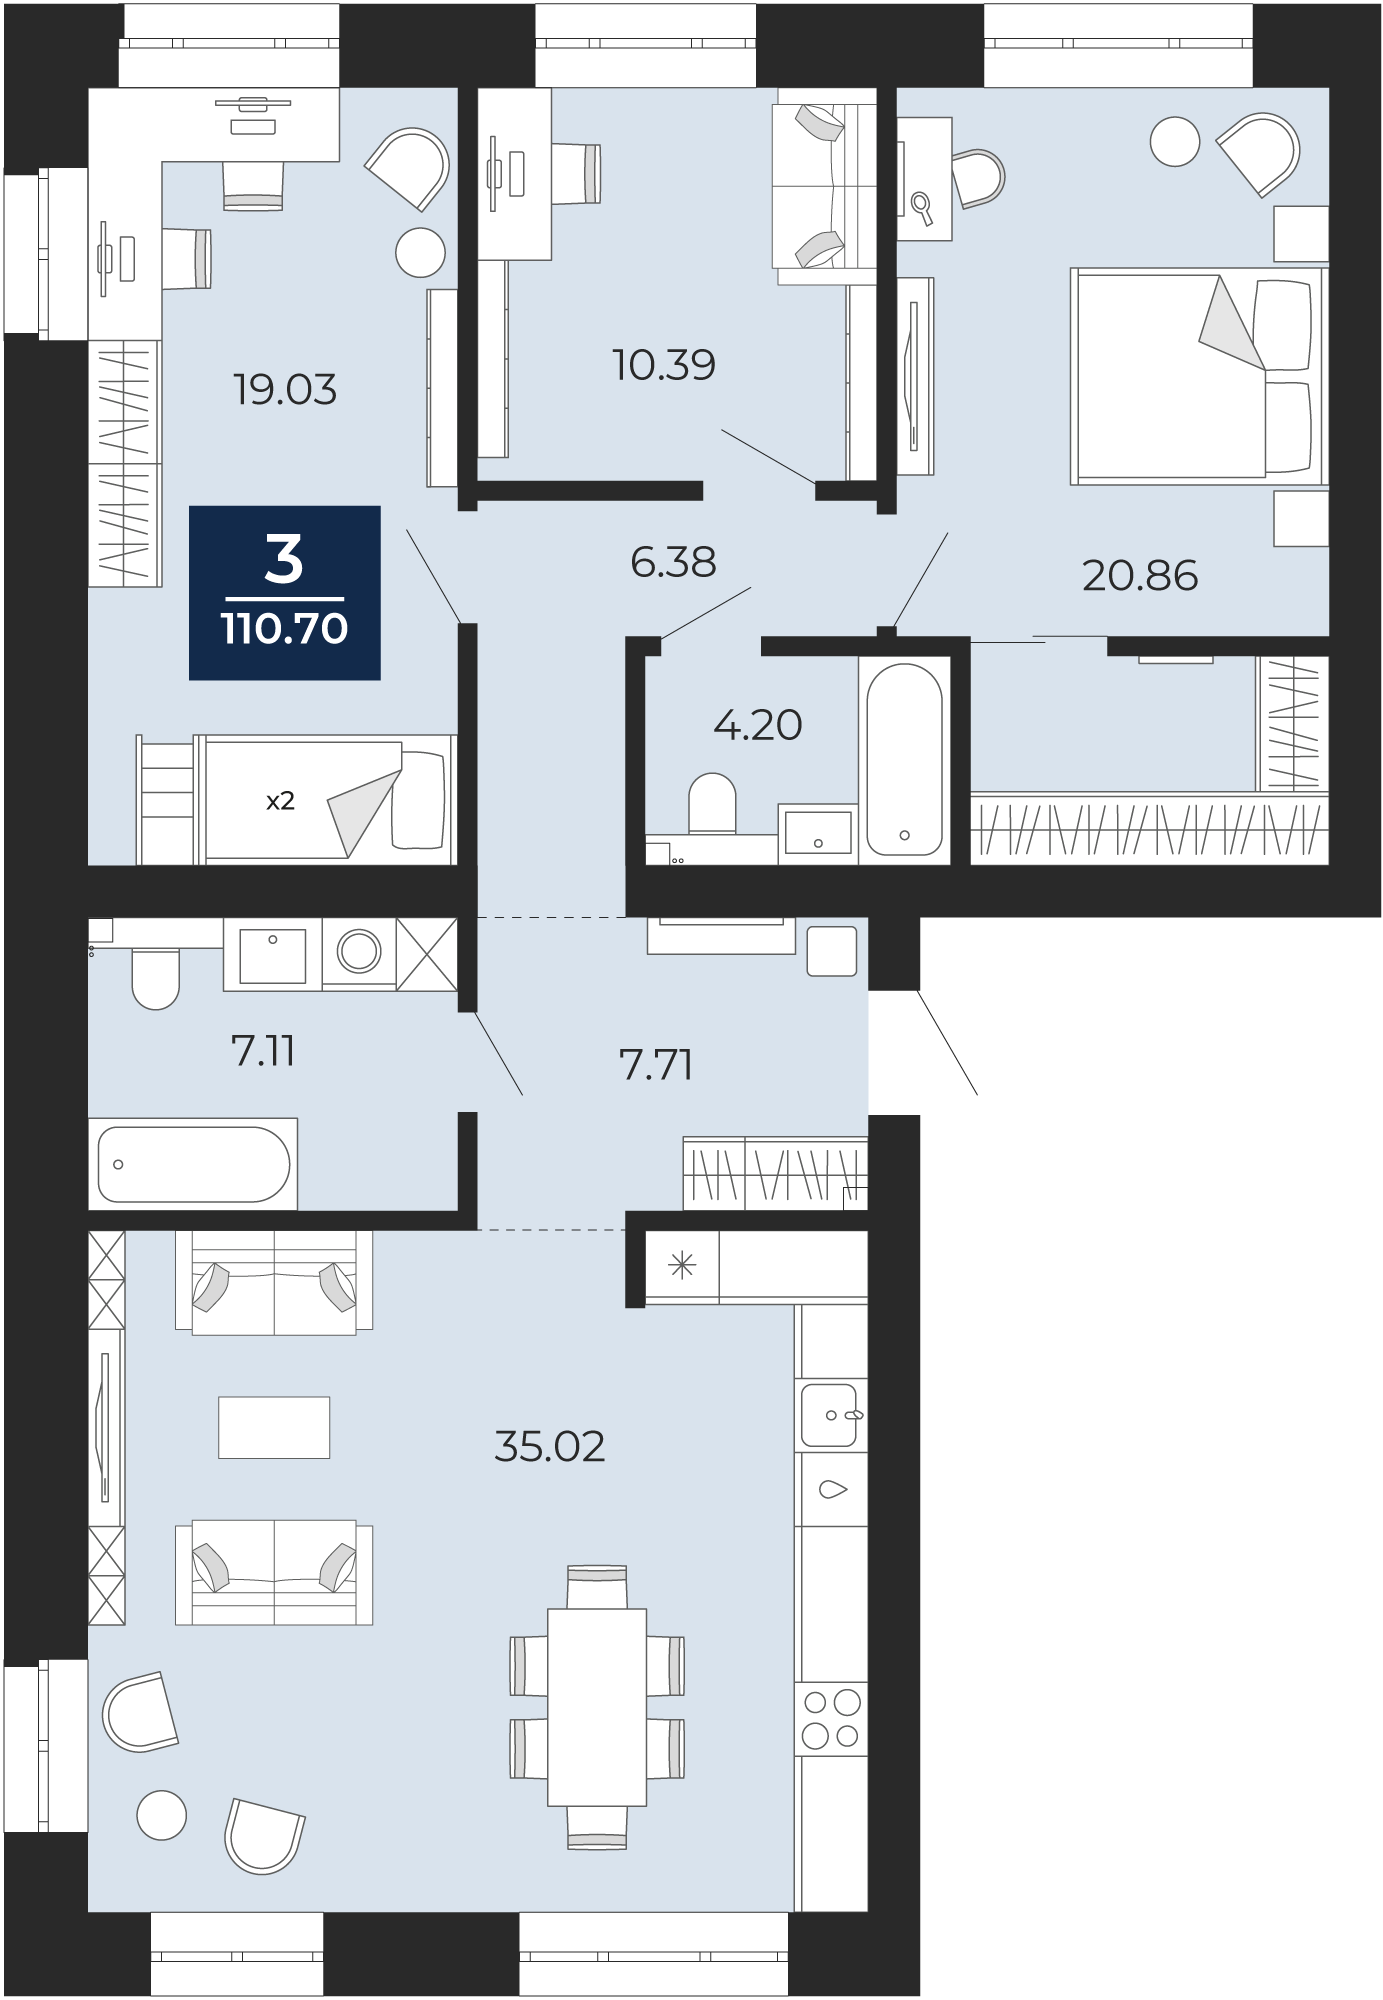 Квартира № 251, 3-комнатная, 110.7 кв. м, 10 этаж